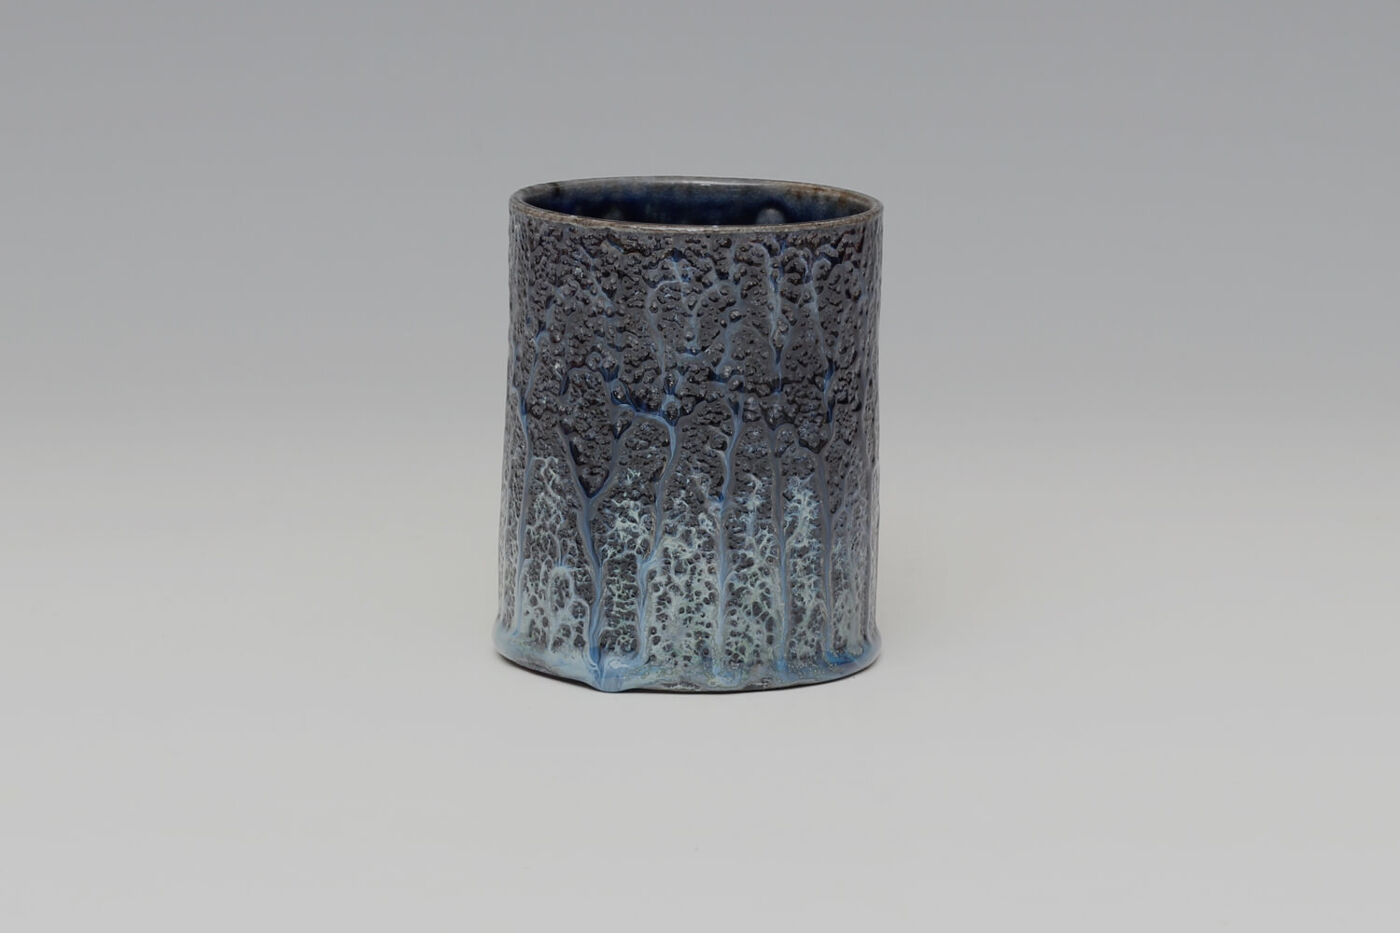 Daniel Boyle Ceramic Mug 14